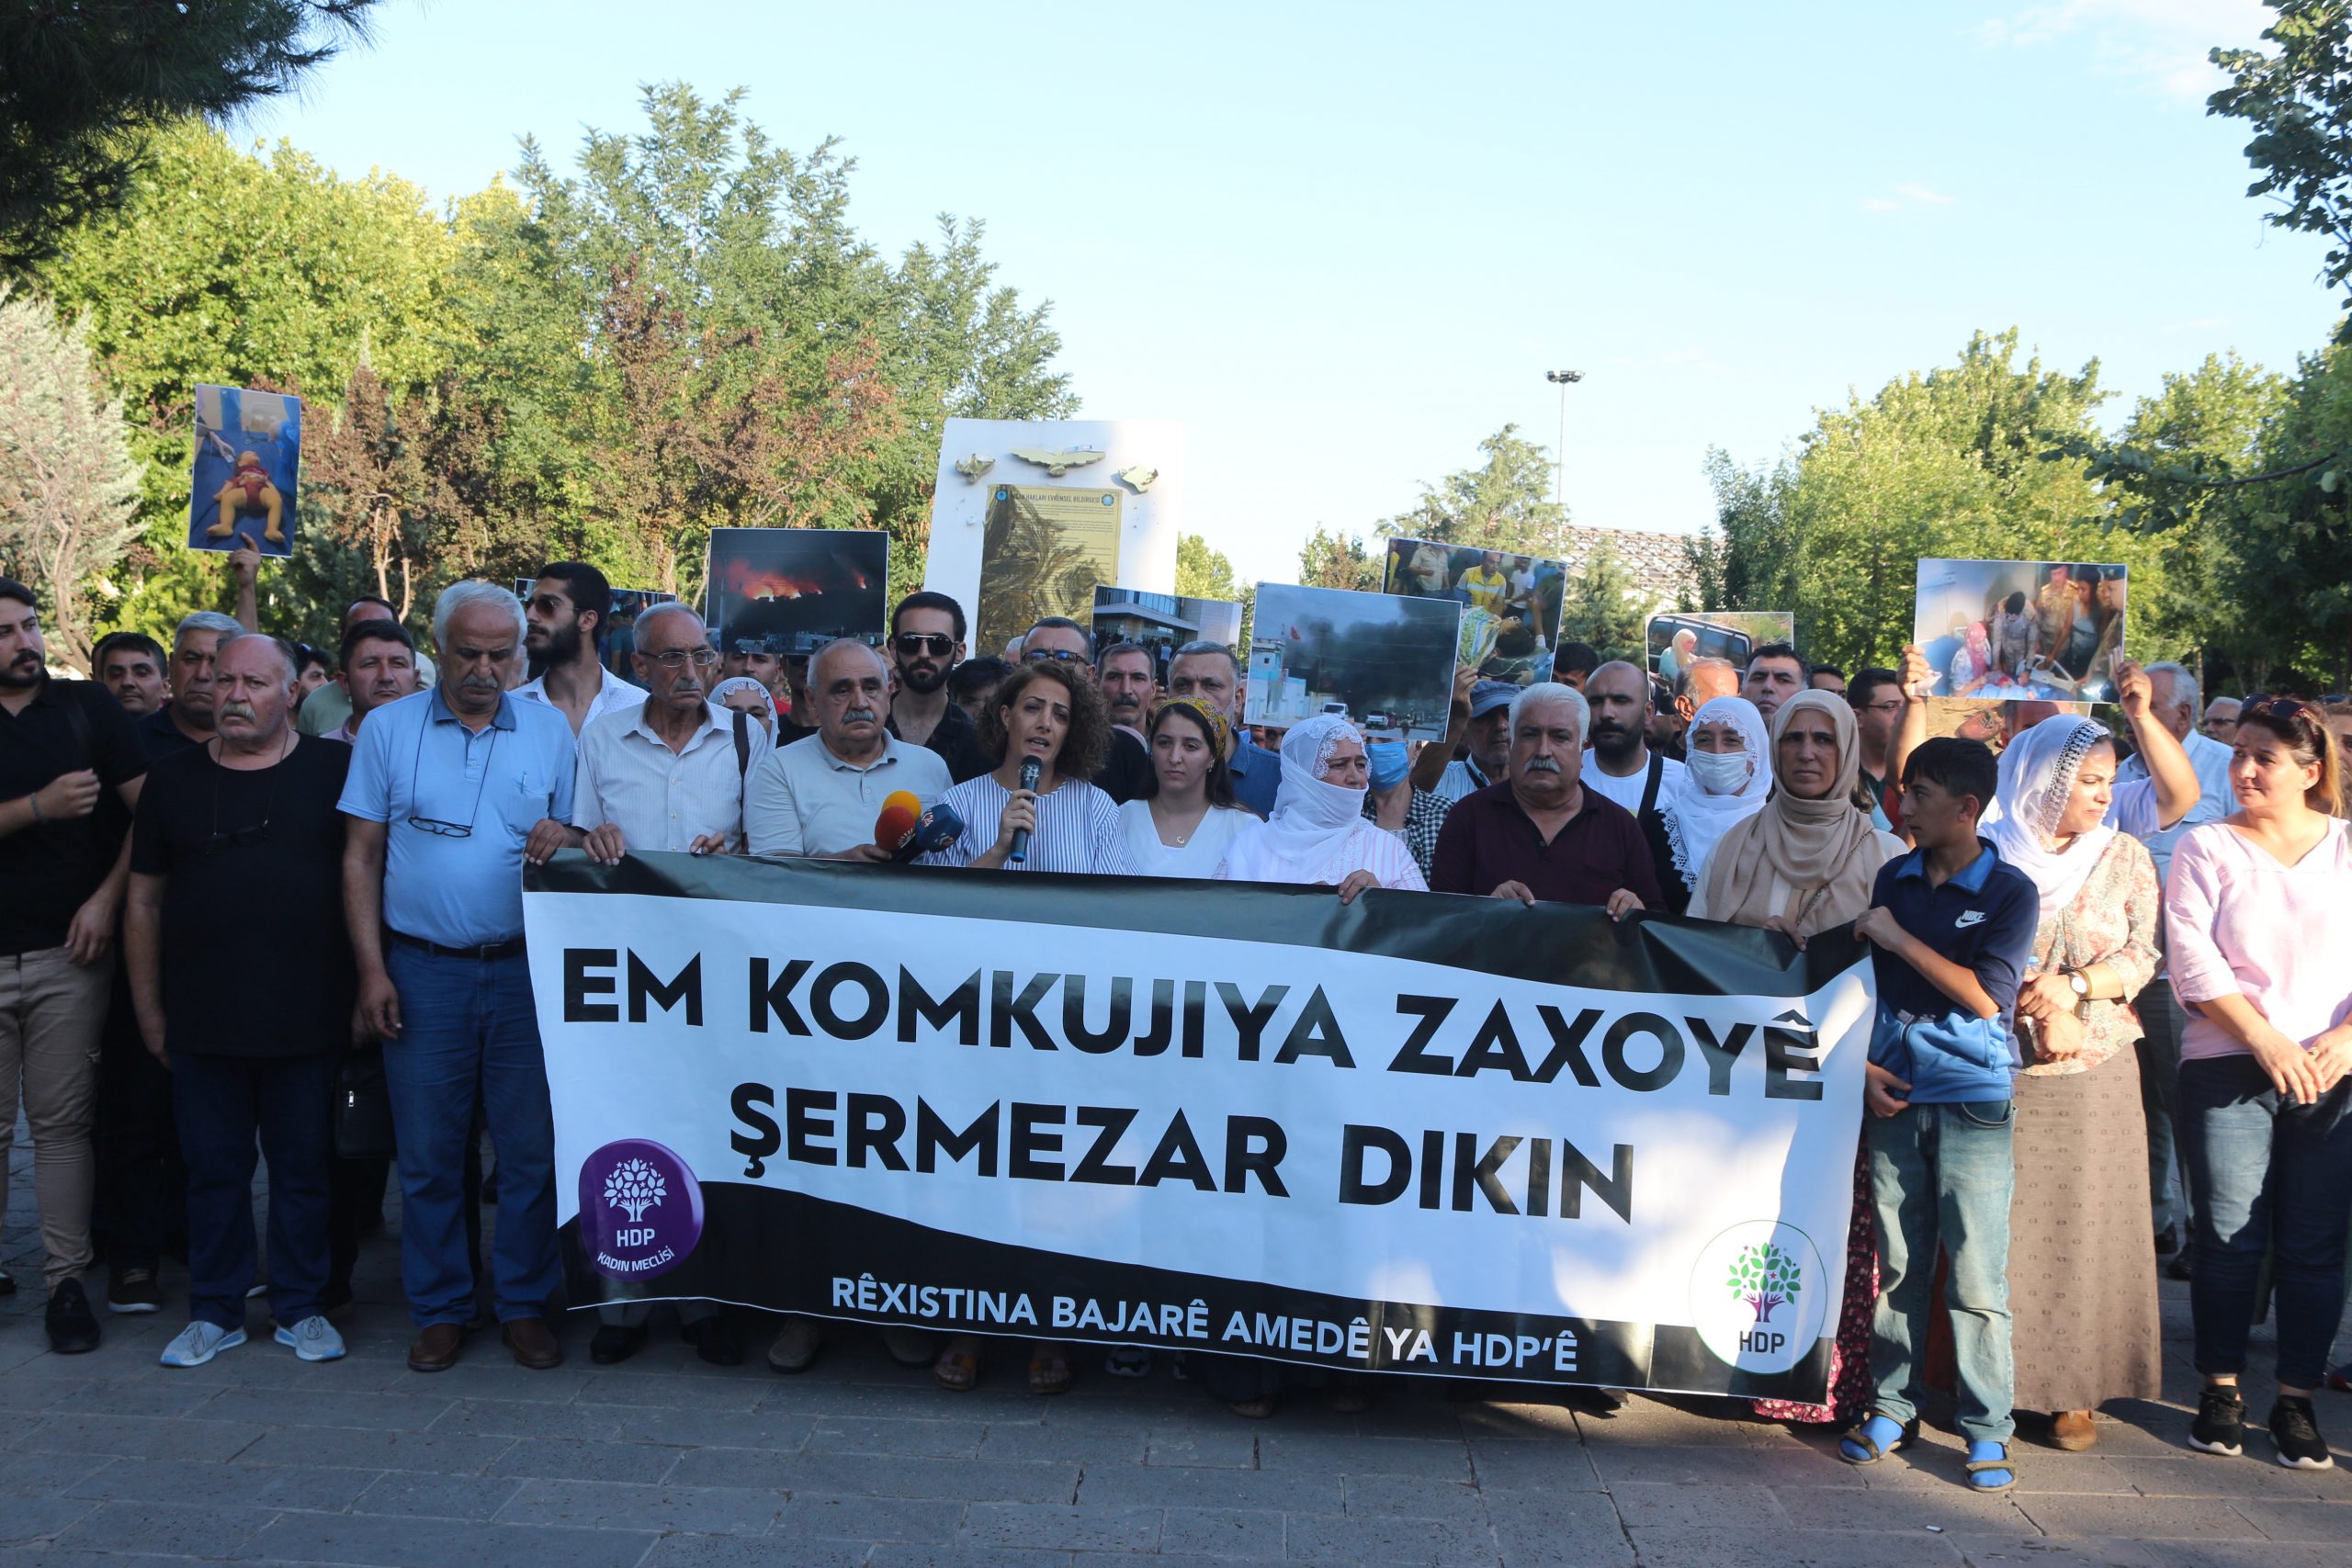 HDP Zaxo’ya ilişkin açıklama yaptı